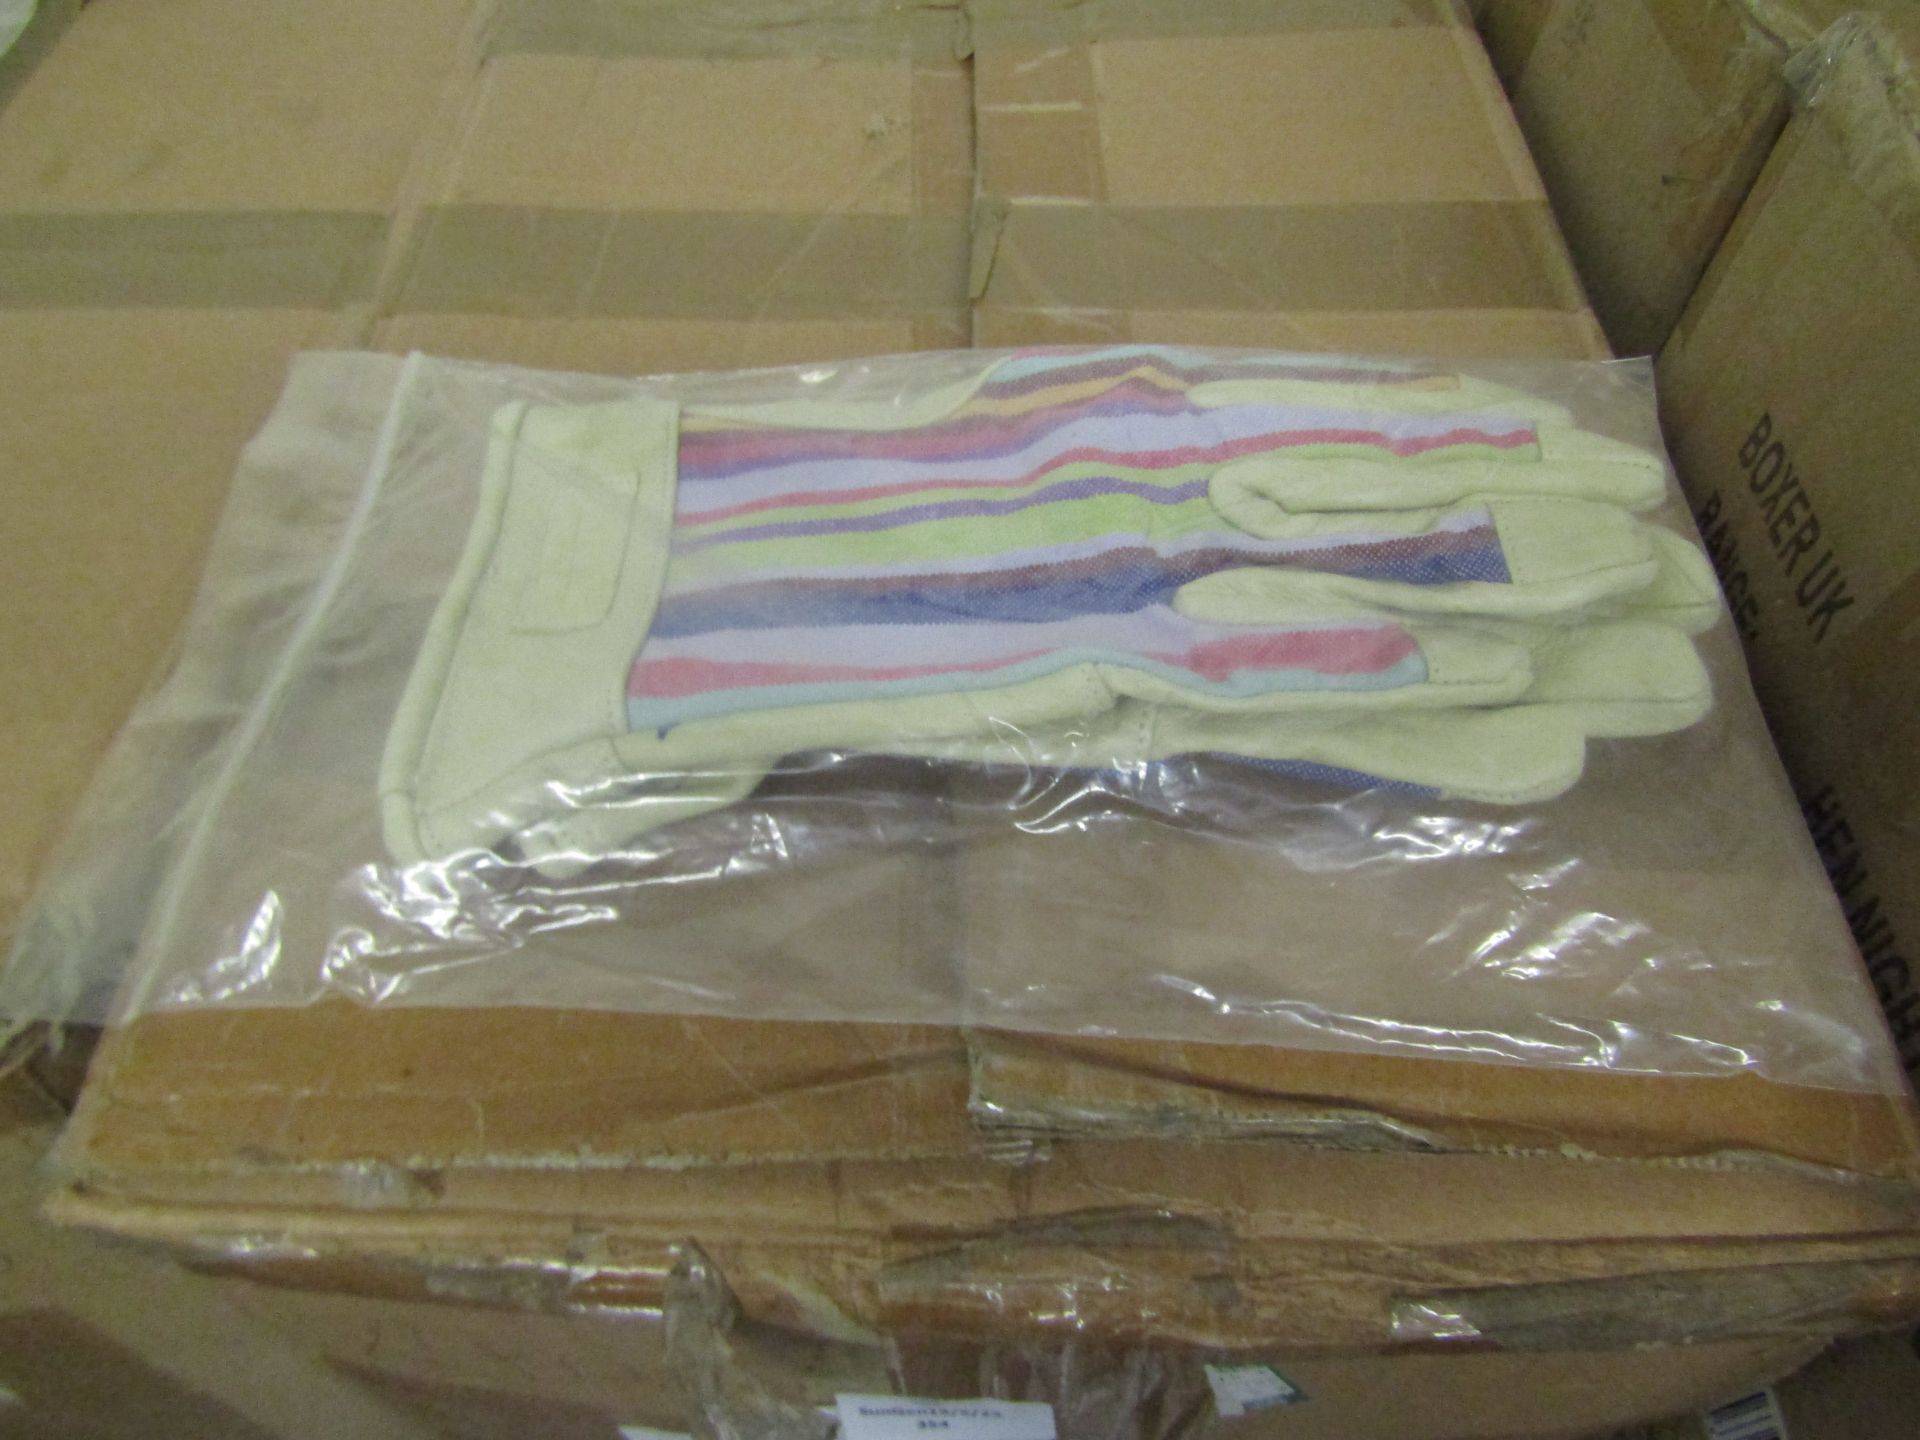 2x Deckchain Stripes-Rainbow Gaunt Gardening Gloves, Size S/M, New & Packaged.